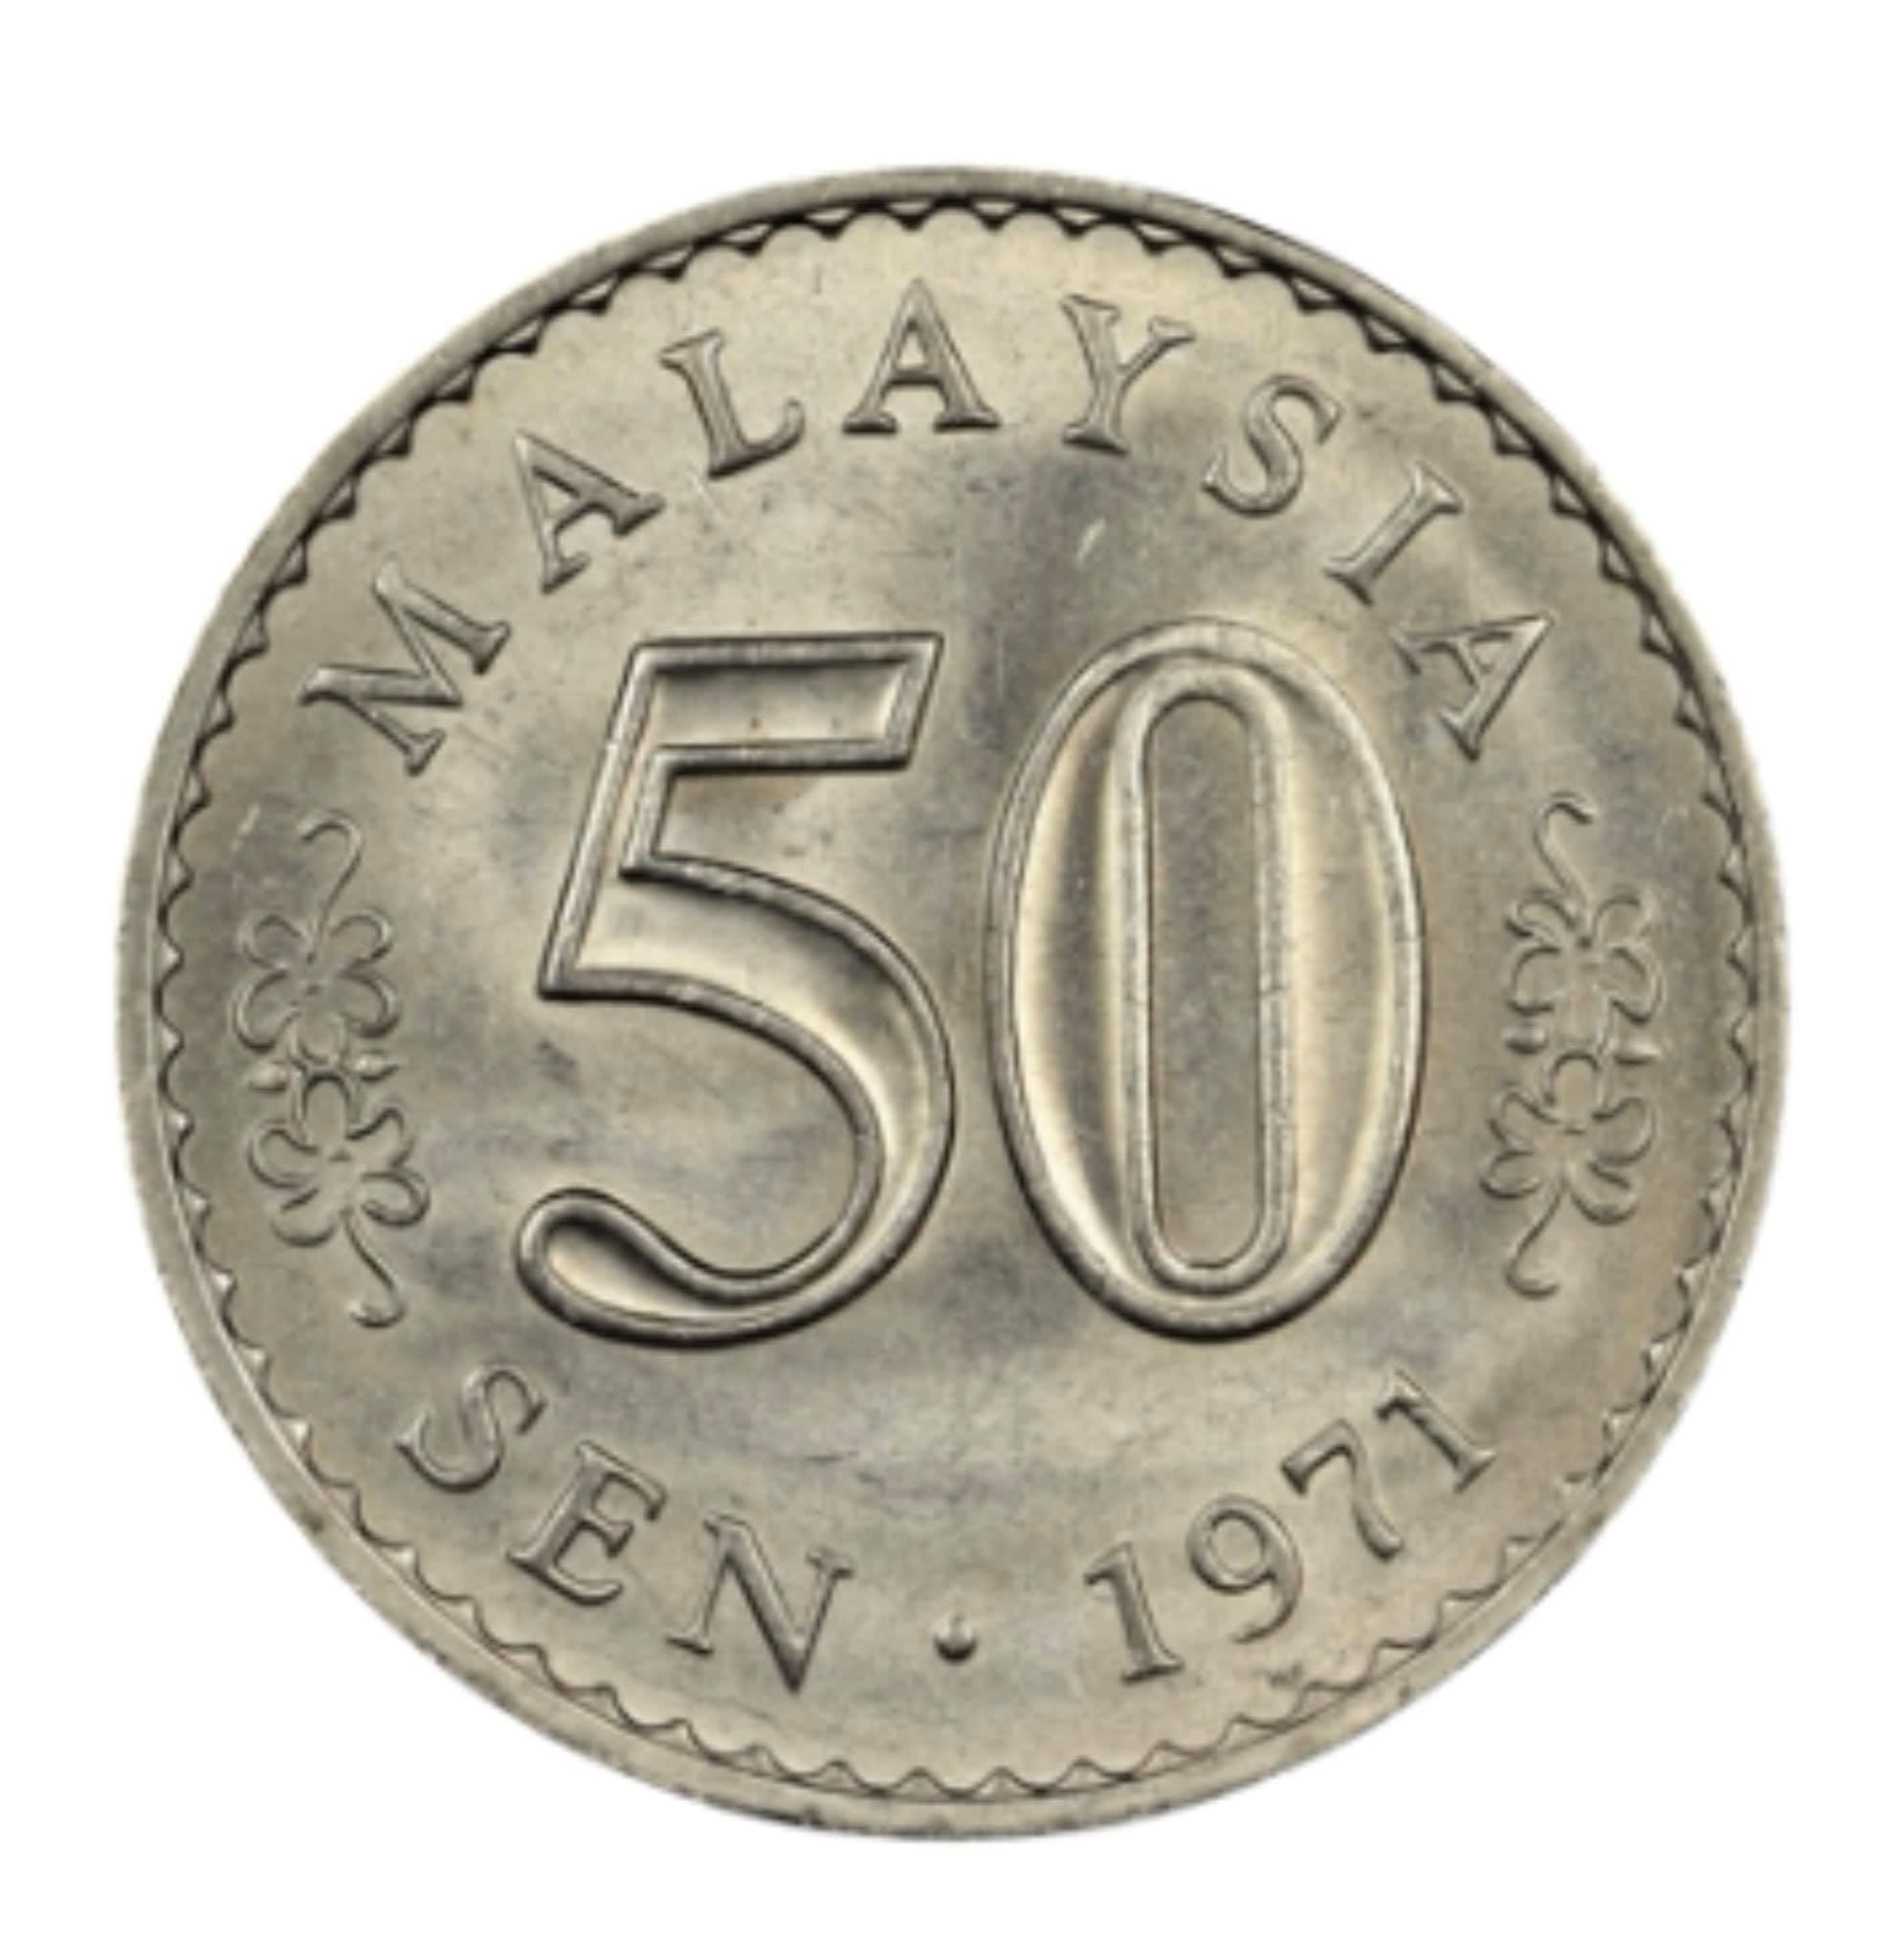 Đồng xu Malaysia 50 sen phiên bản cũ